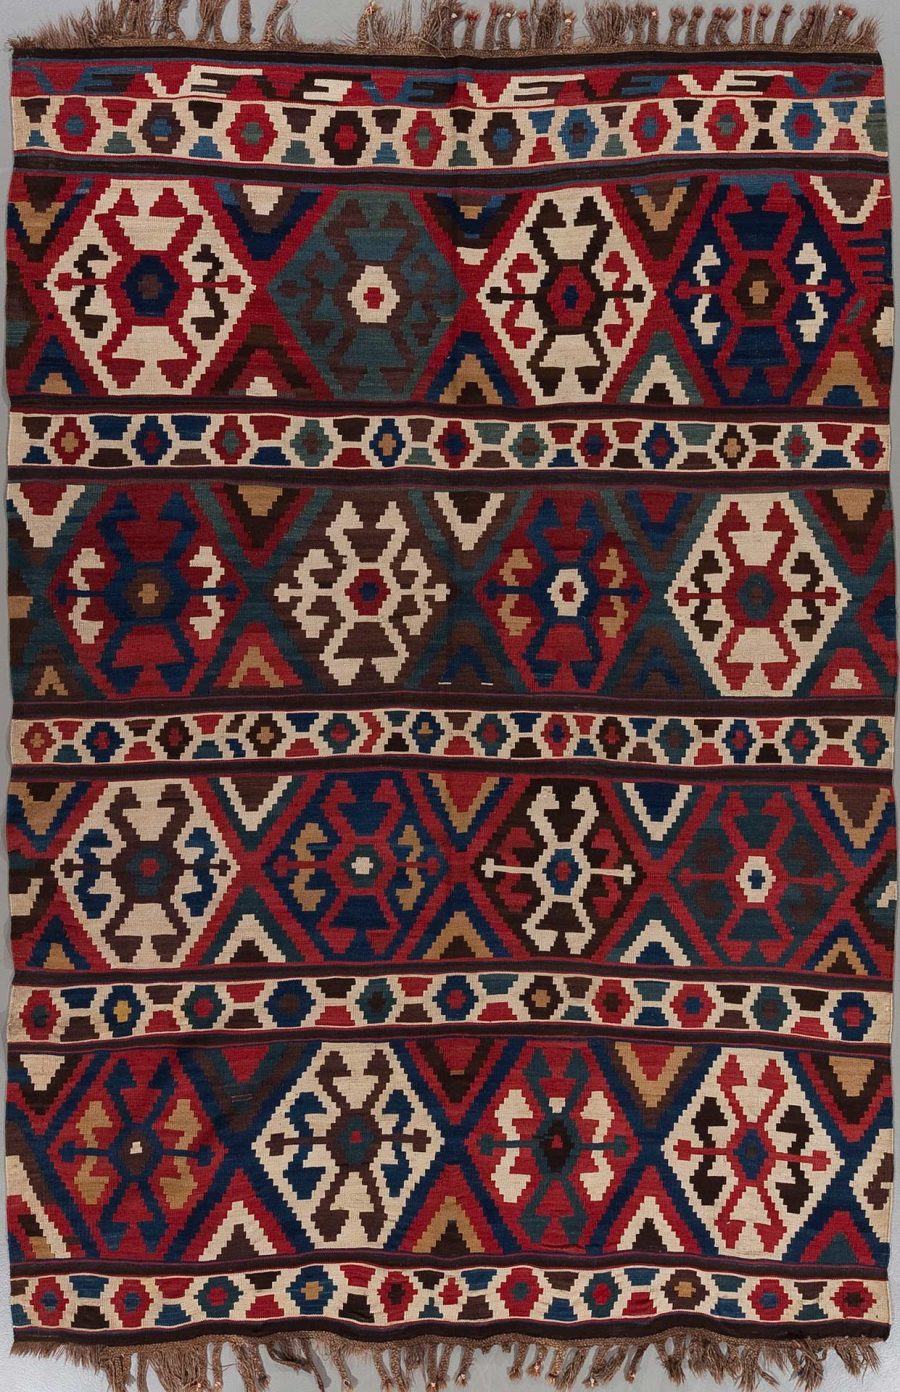 Traditioneller handgeknüpfter Teppich mit komplexem Muster in Rot-, Blau-, Beige- und Brauntönen mit dekorativen Fransen an den Enden.